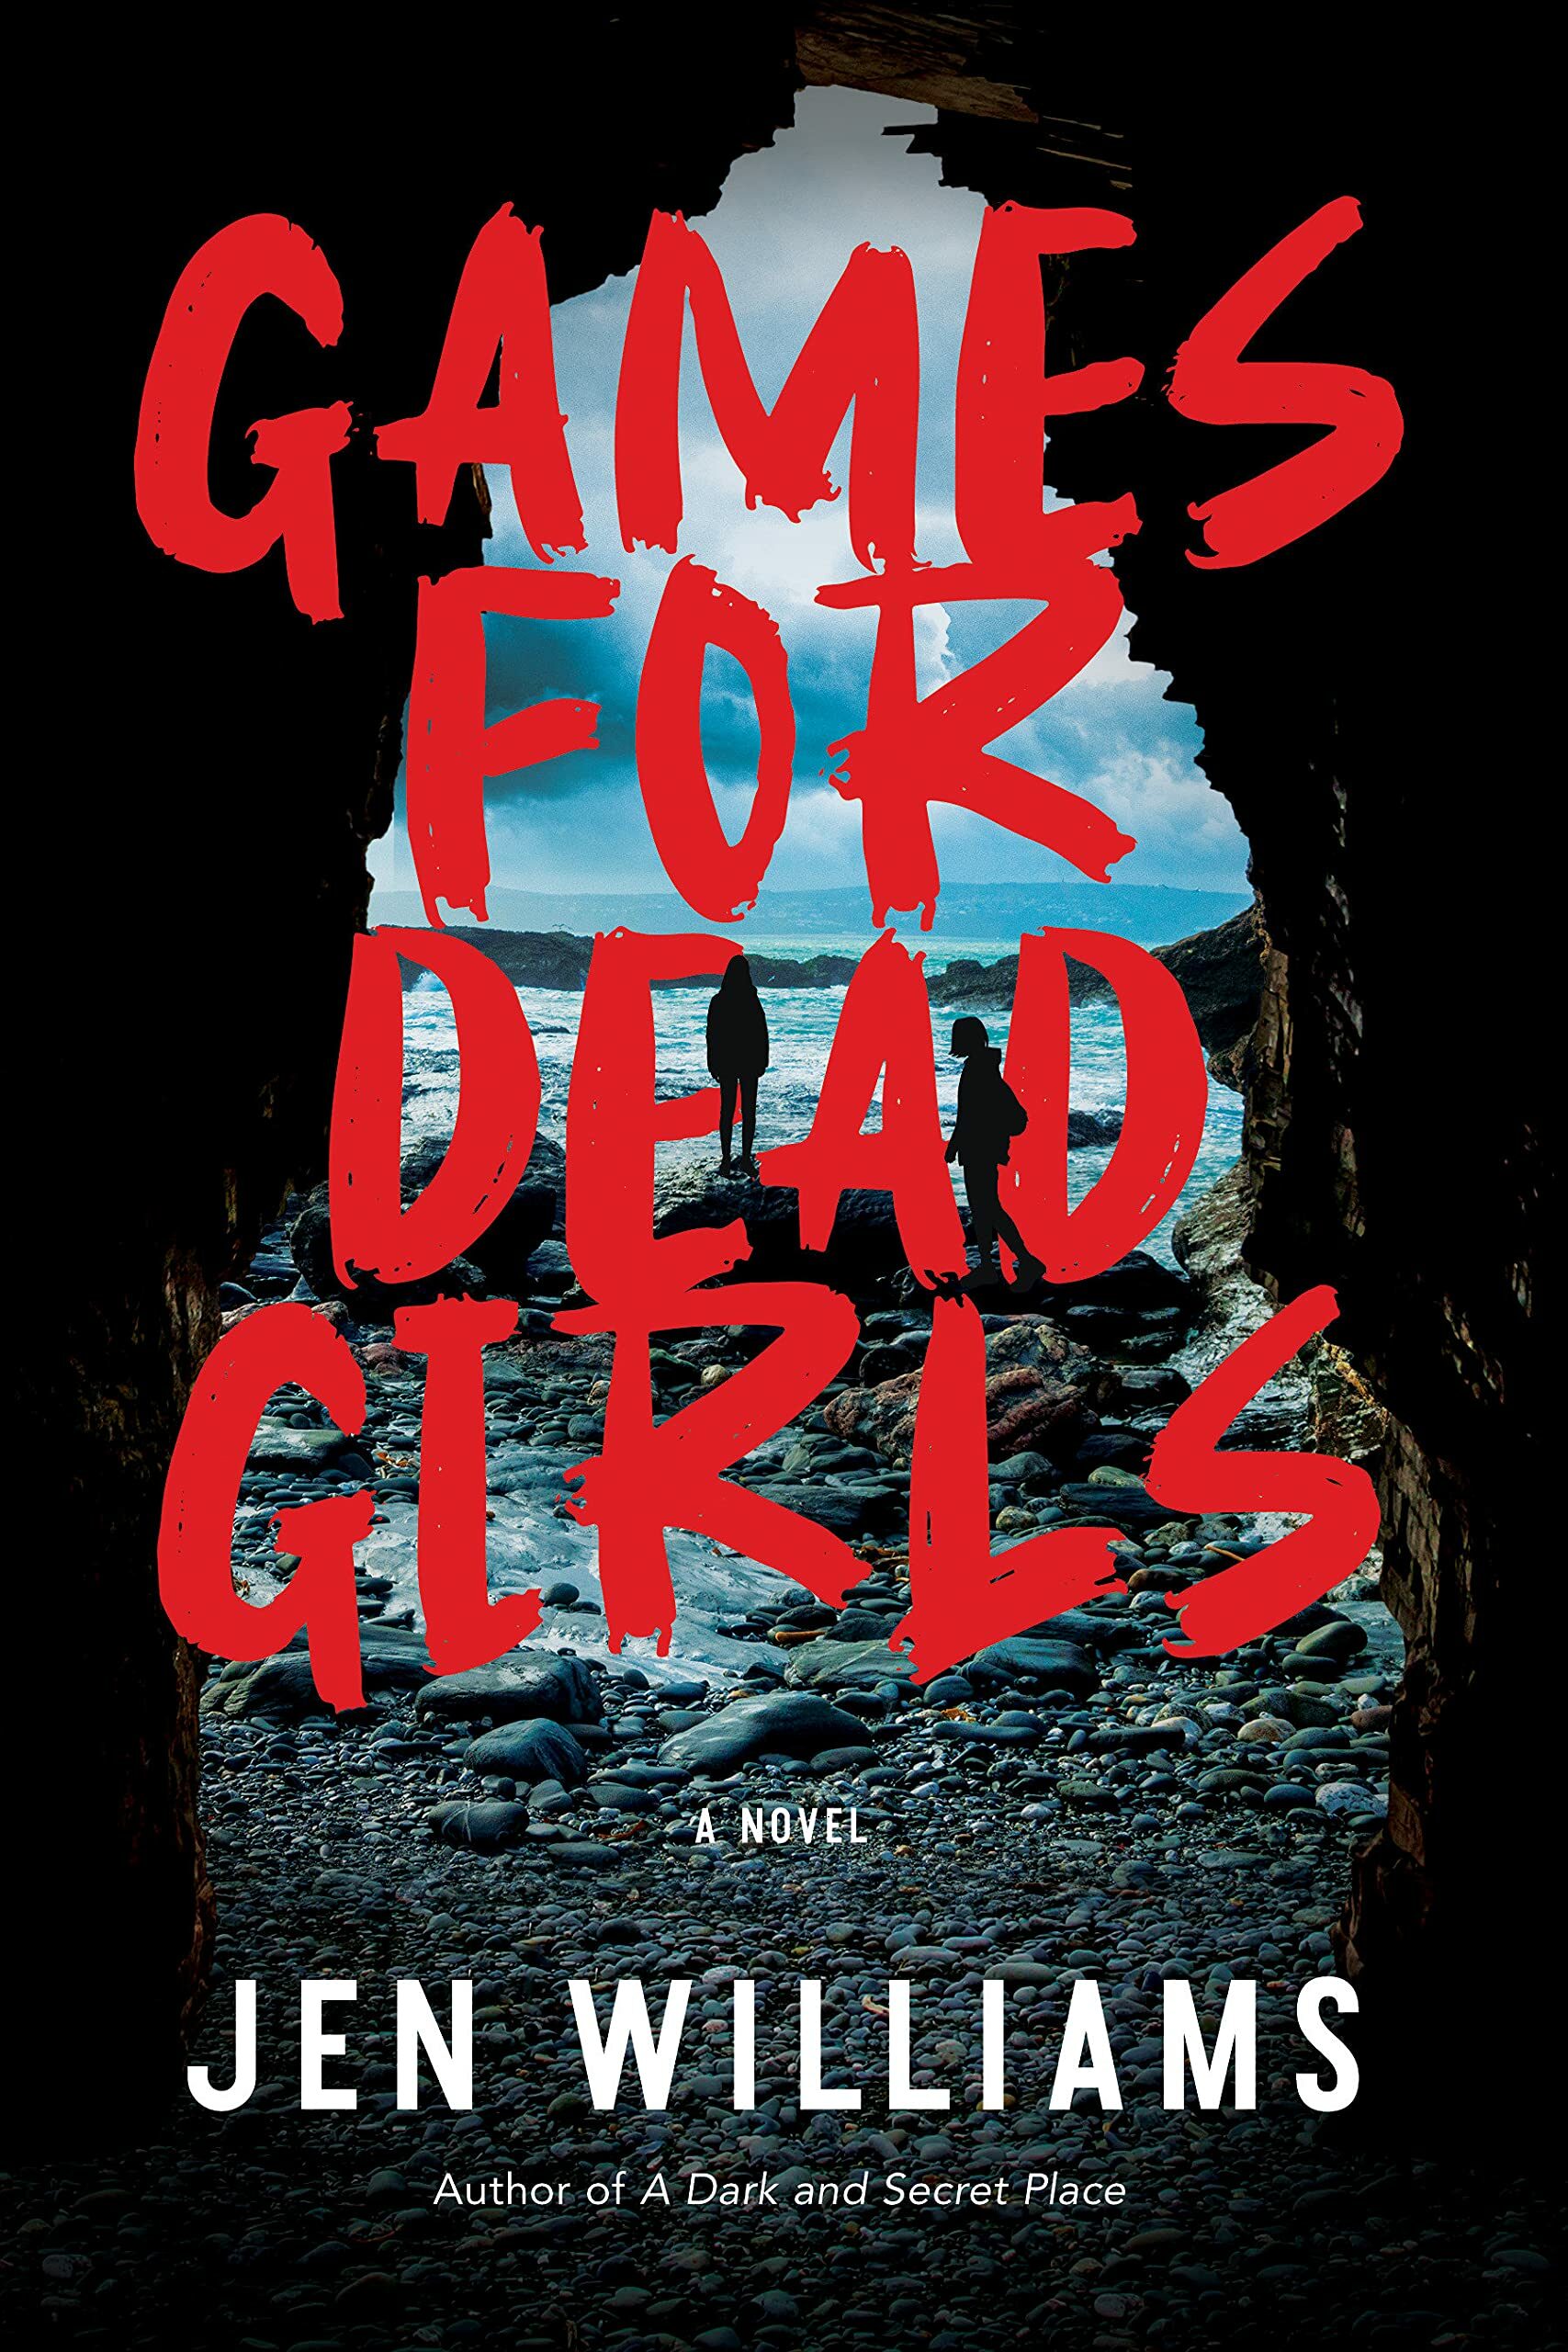 Games for Dead Girls